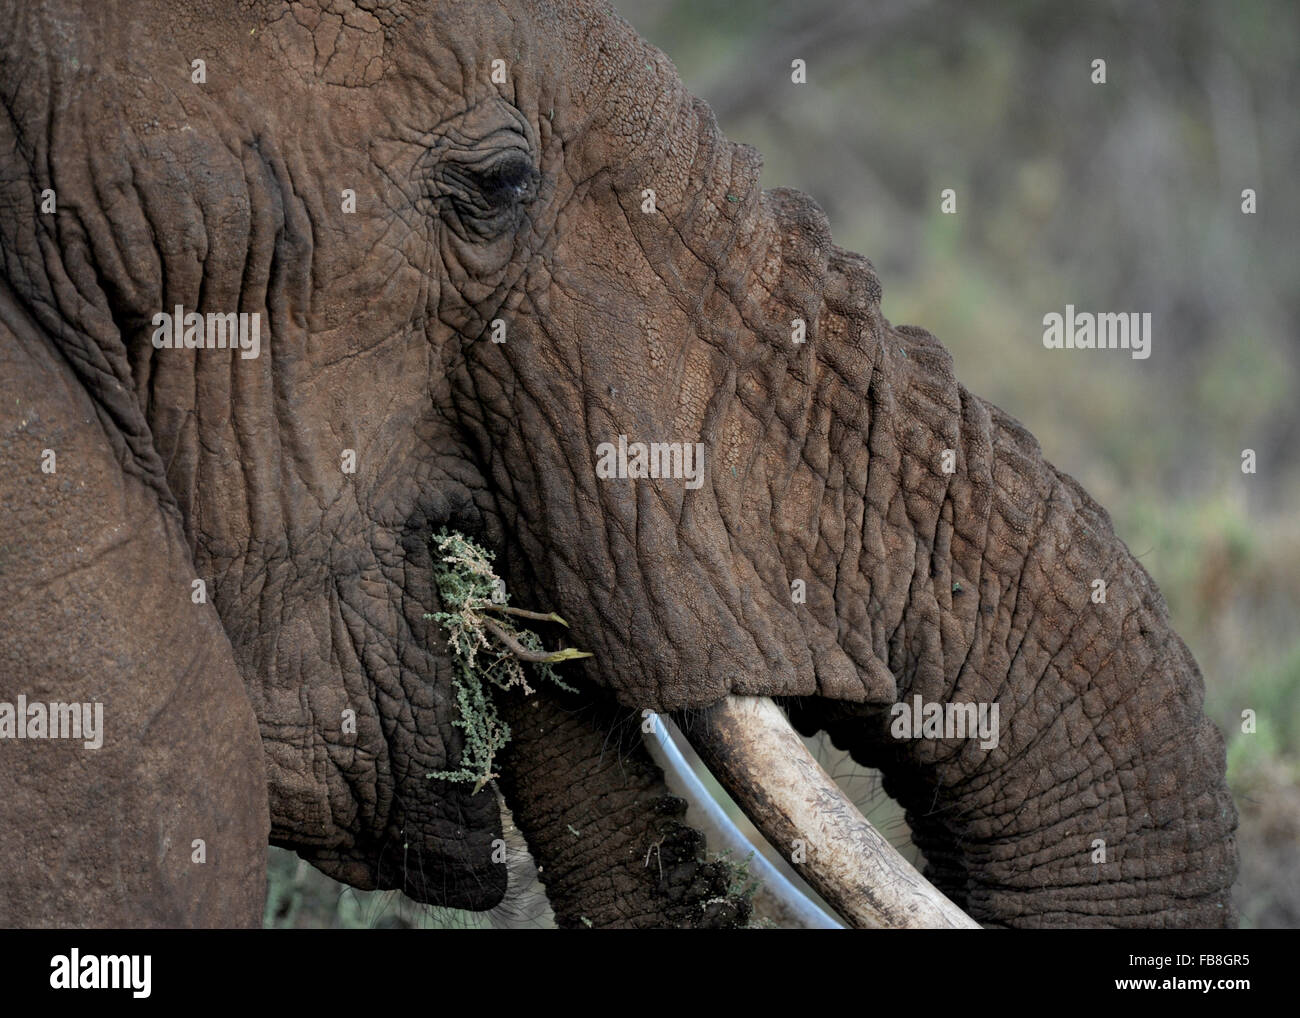 Vue de la tête de l'éléphant Kenya Samburu Alimentation Banque D'Images